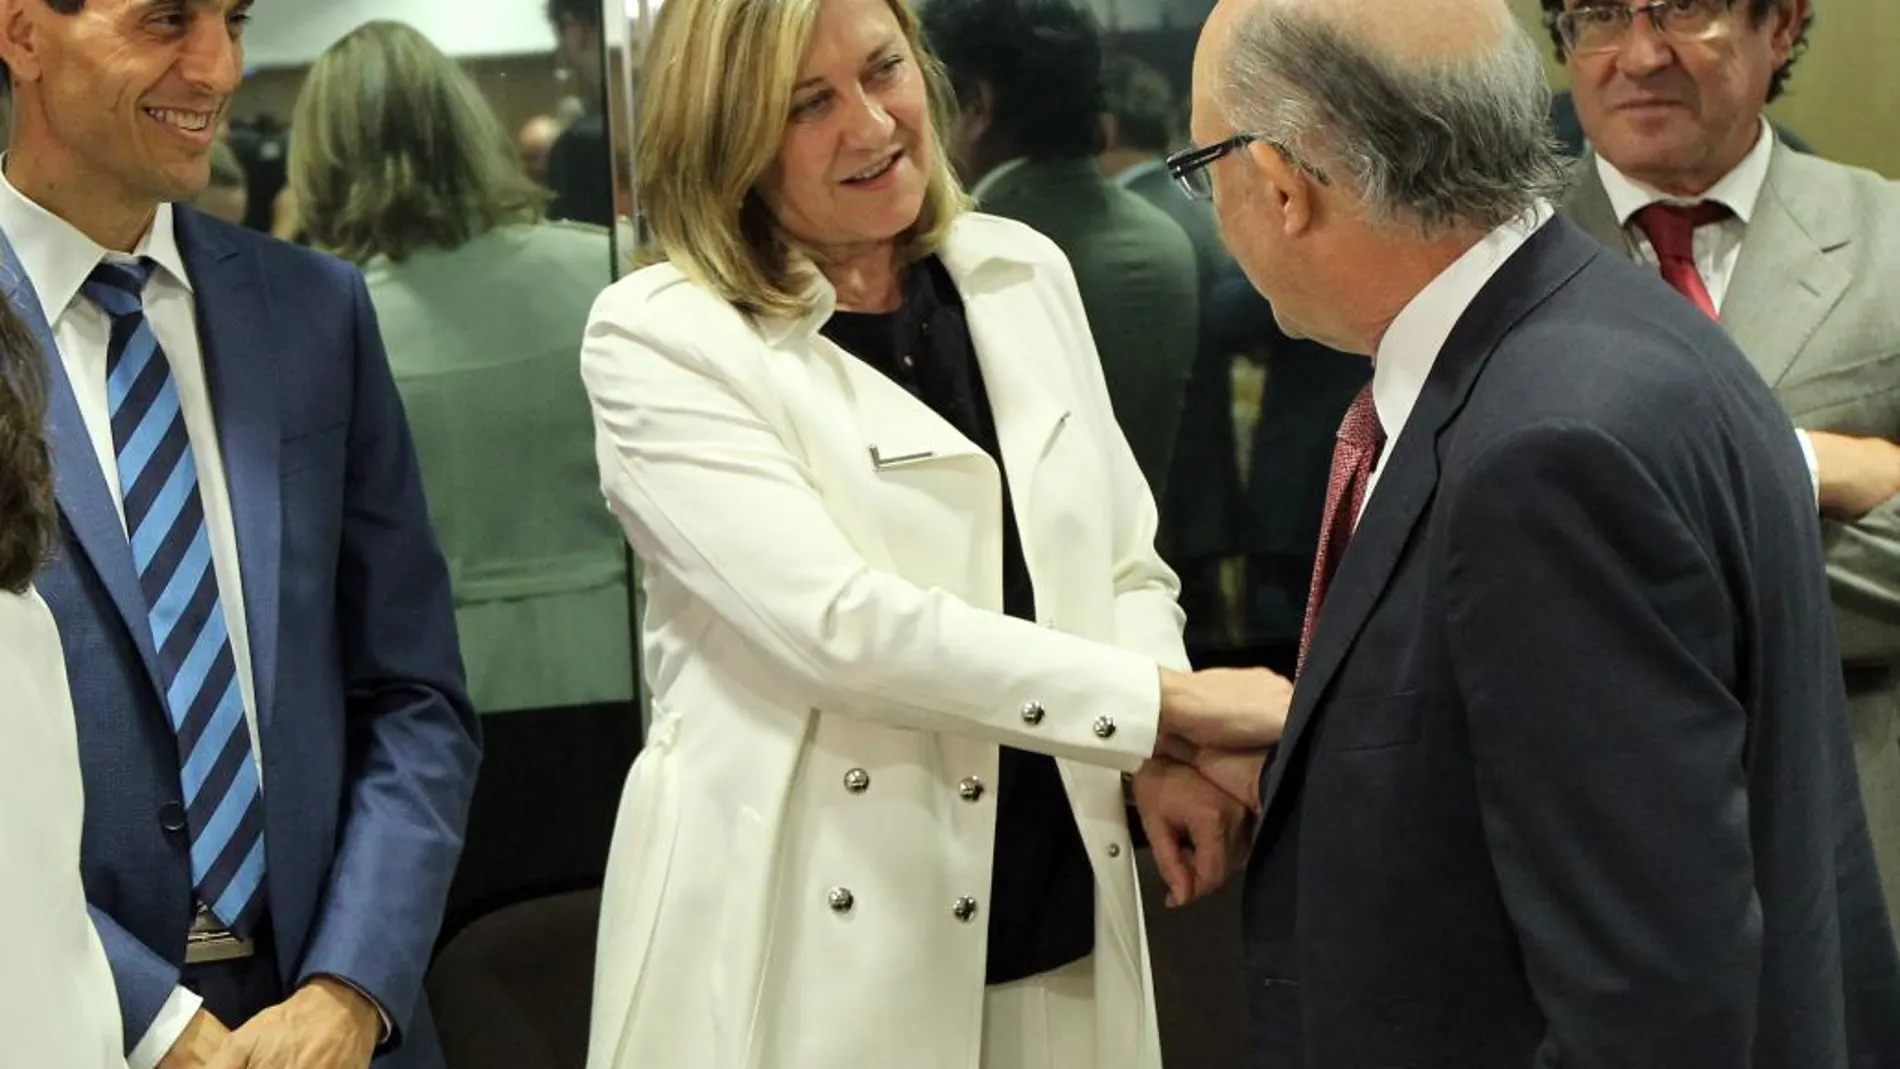 La consejera de Economía y Hacienda, Pilar del Olmo, saluda al ministro Montoro, momentos antes de empezar el Consejo de Política Fiscal y Financiera